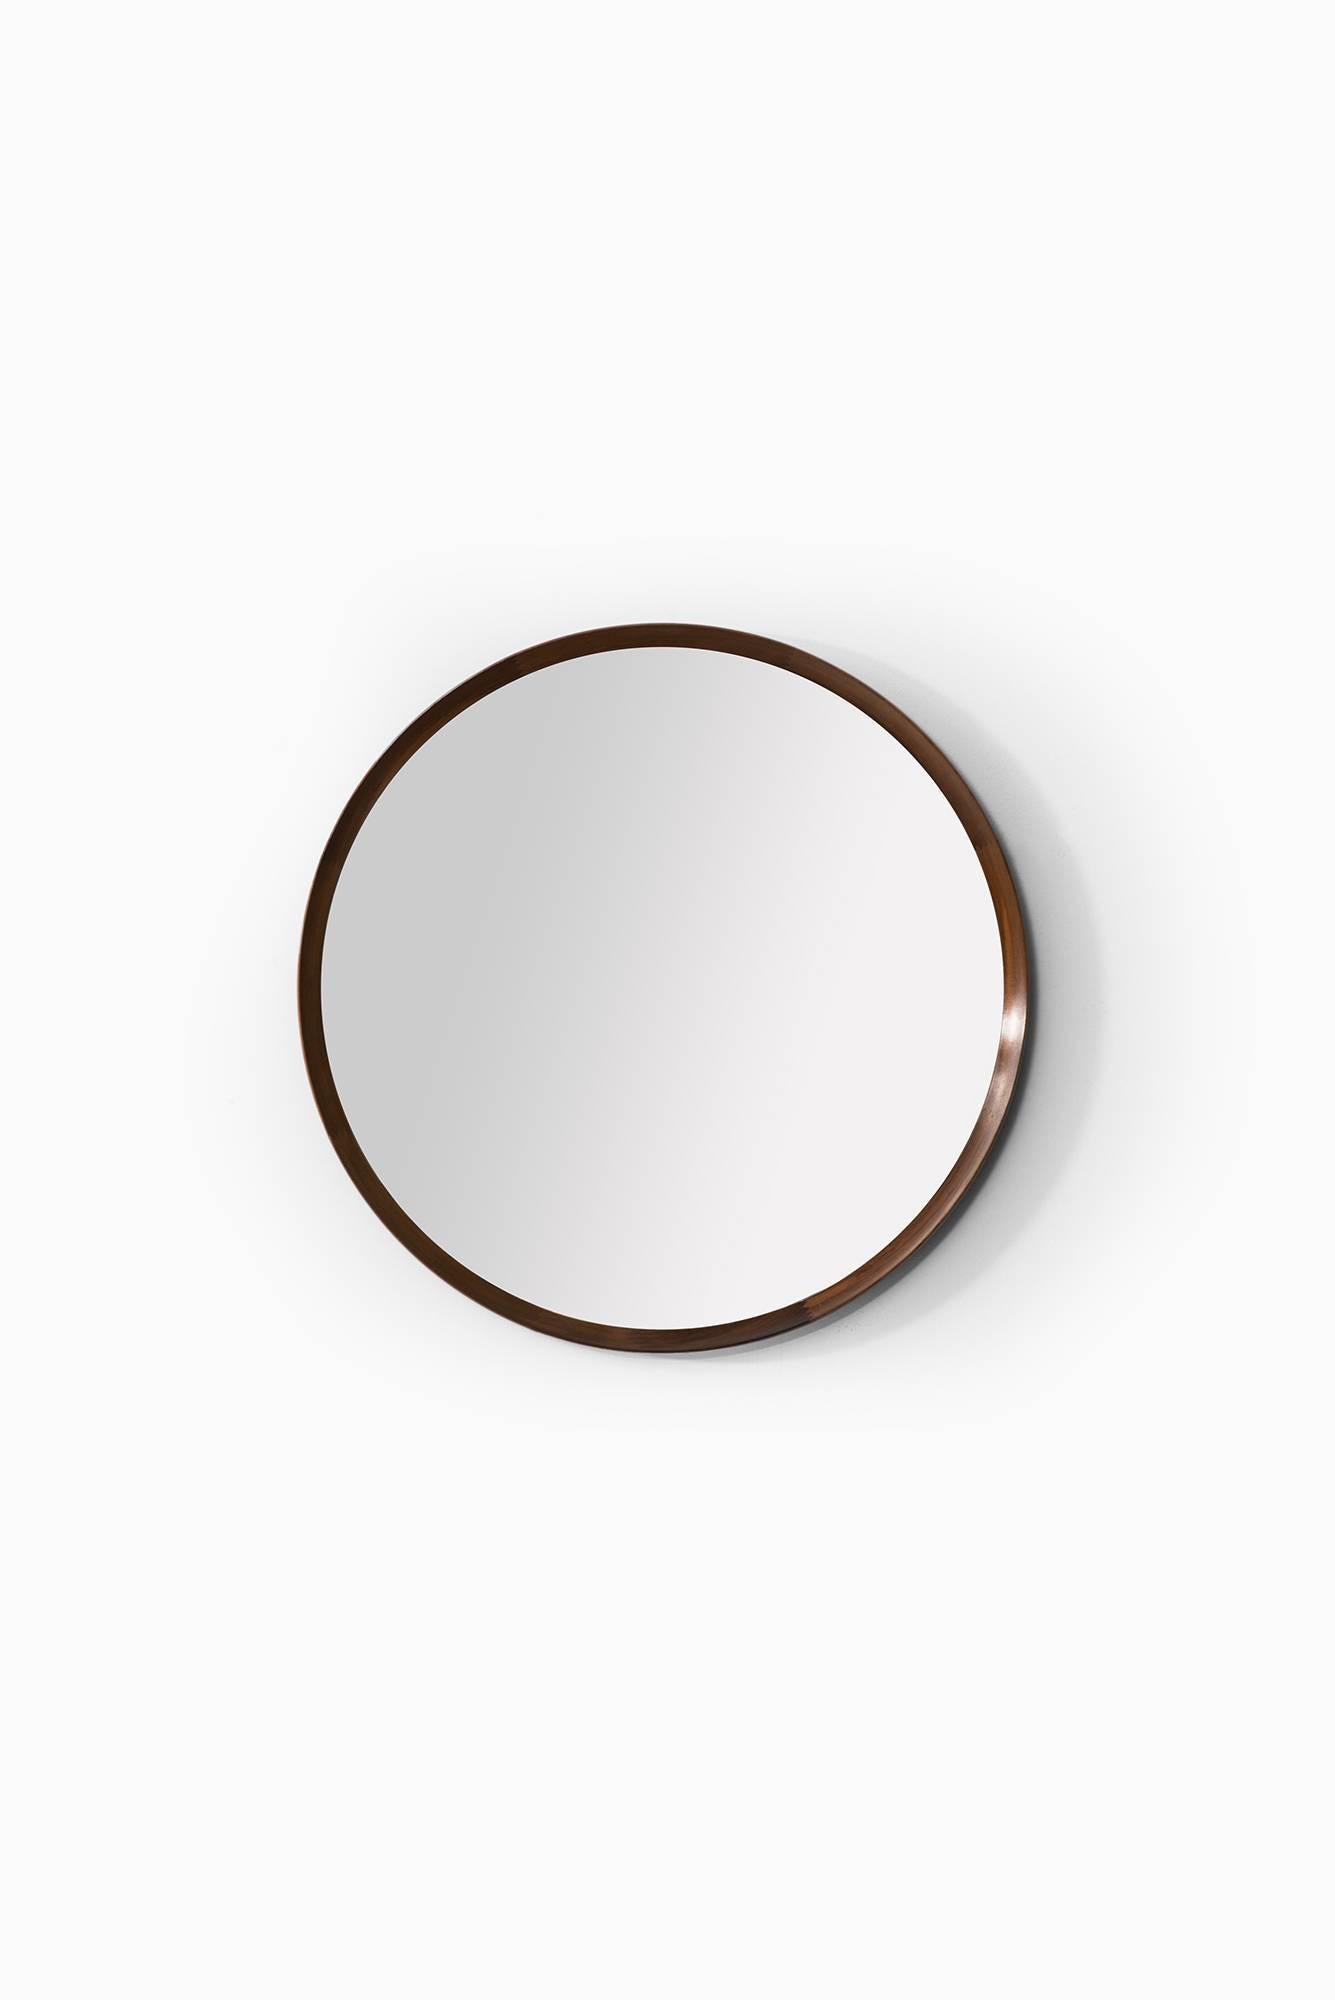 Seltener Spiegel aus Palisanderholz, entworfen von Uno & Östen Kristiansson. Produziert von Luxus in Vittsjö, Schweden.